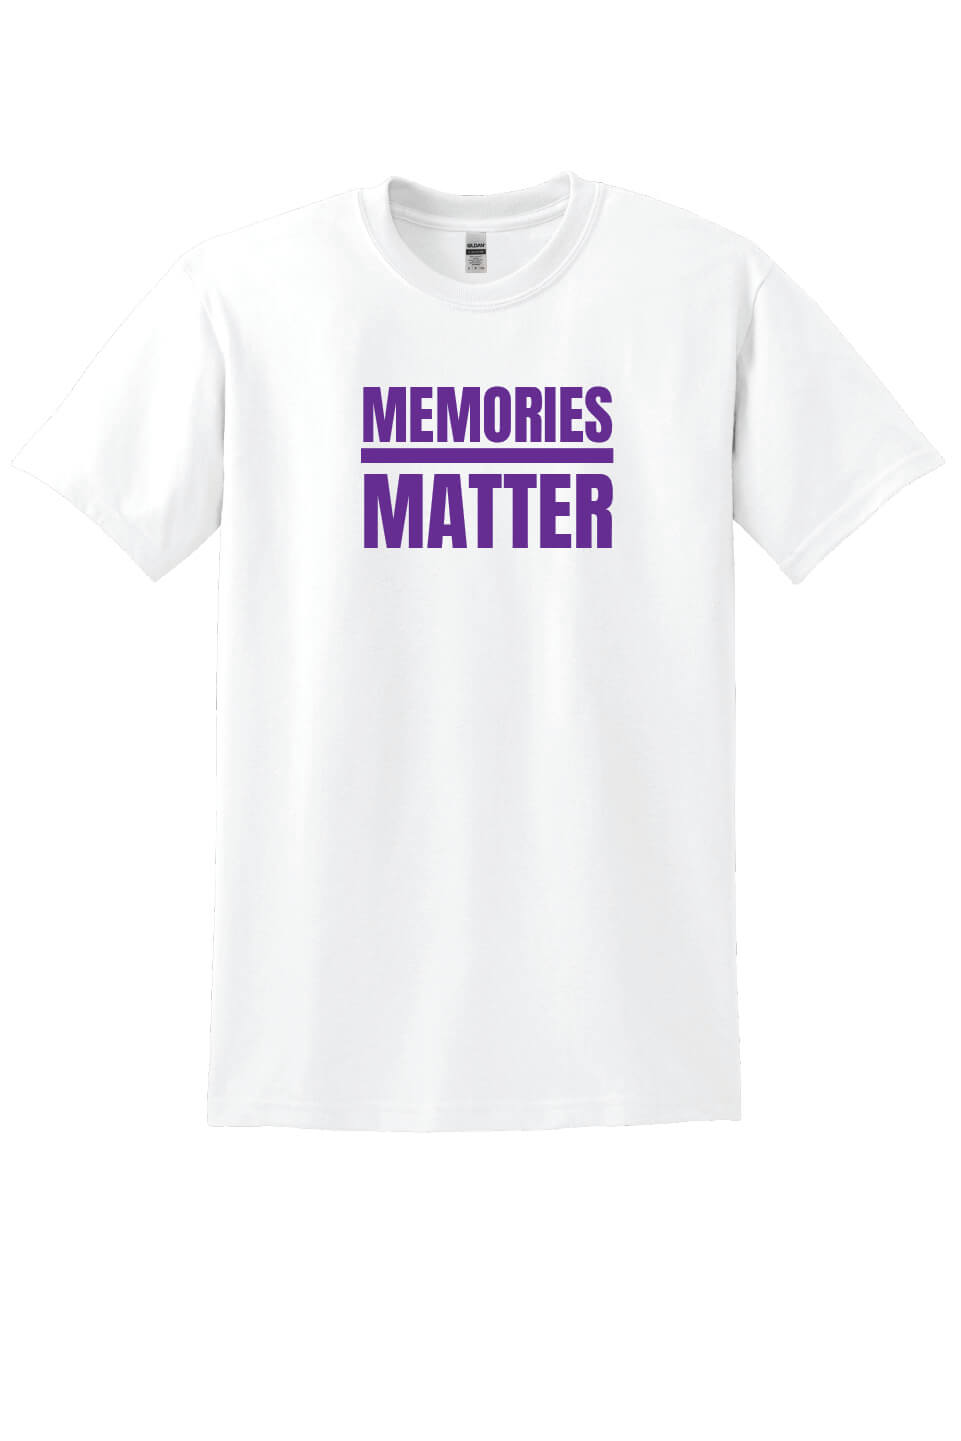 Memories Matter Flag Back Short Sleeve T-Shirt white front